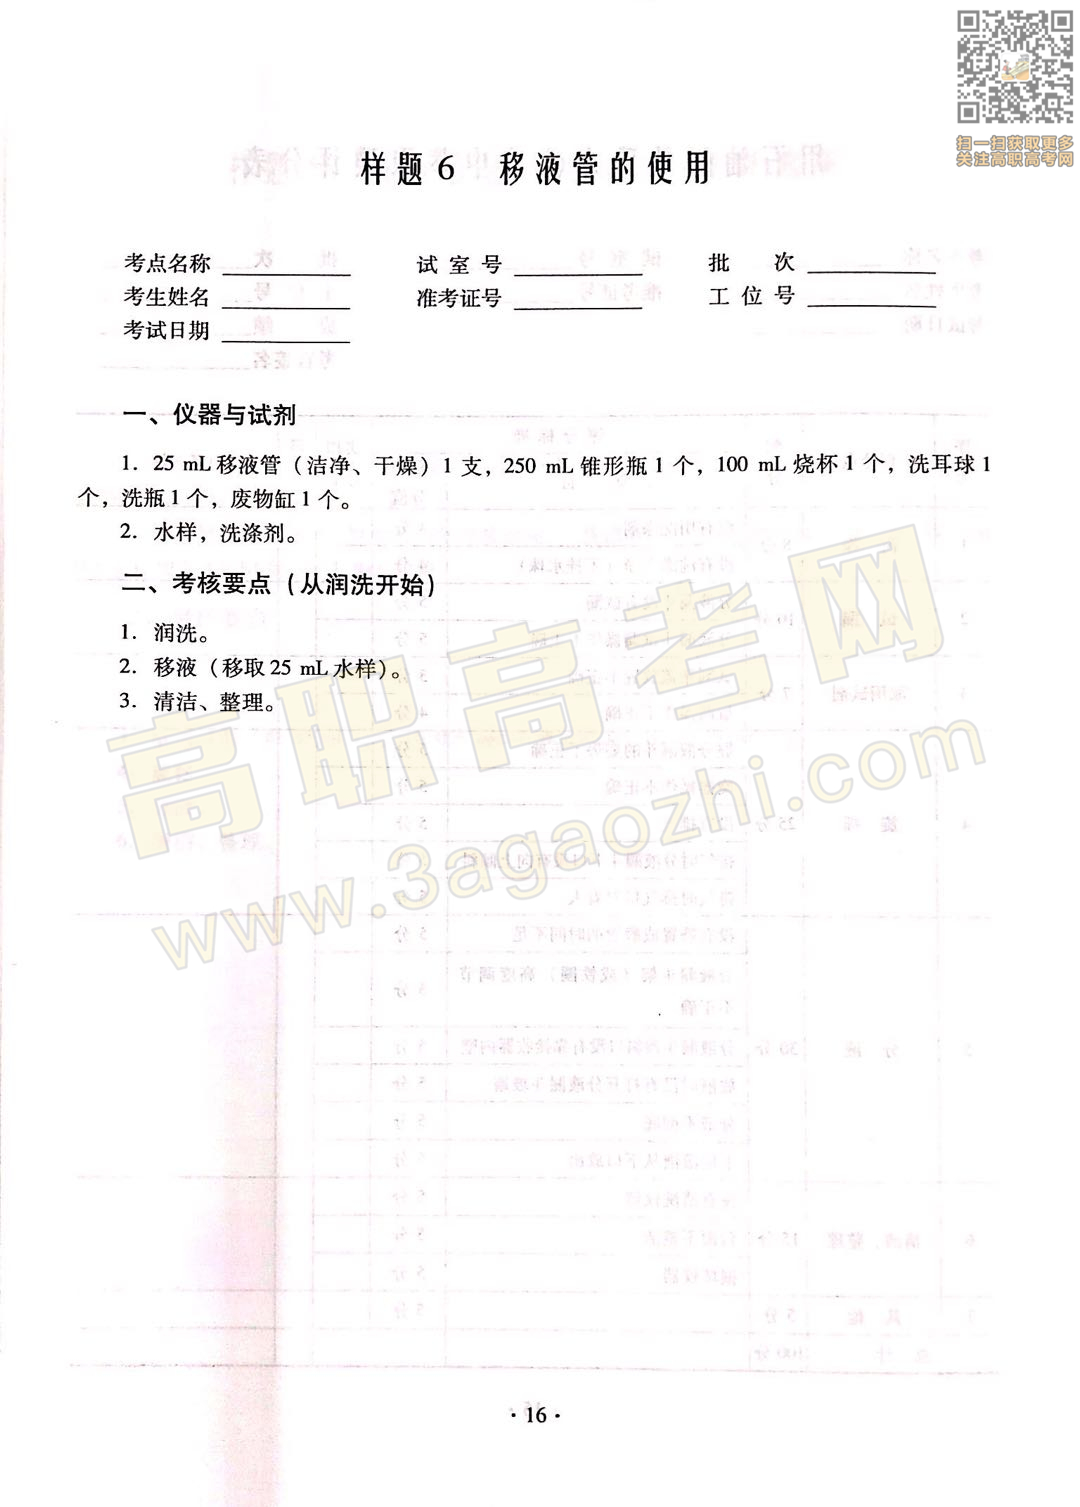 化学证书,2020年广东中职技能课程考试大纲及样题